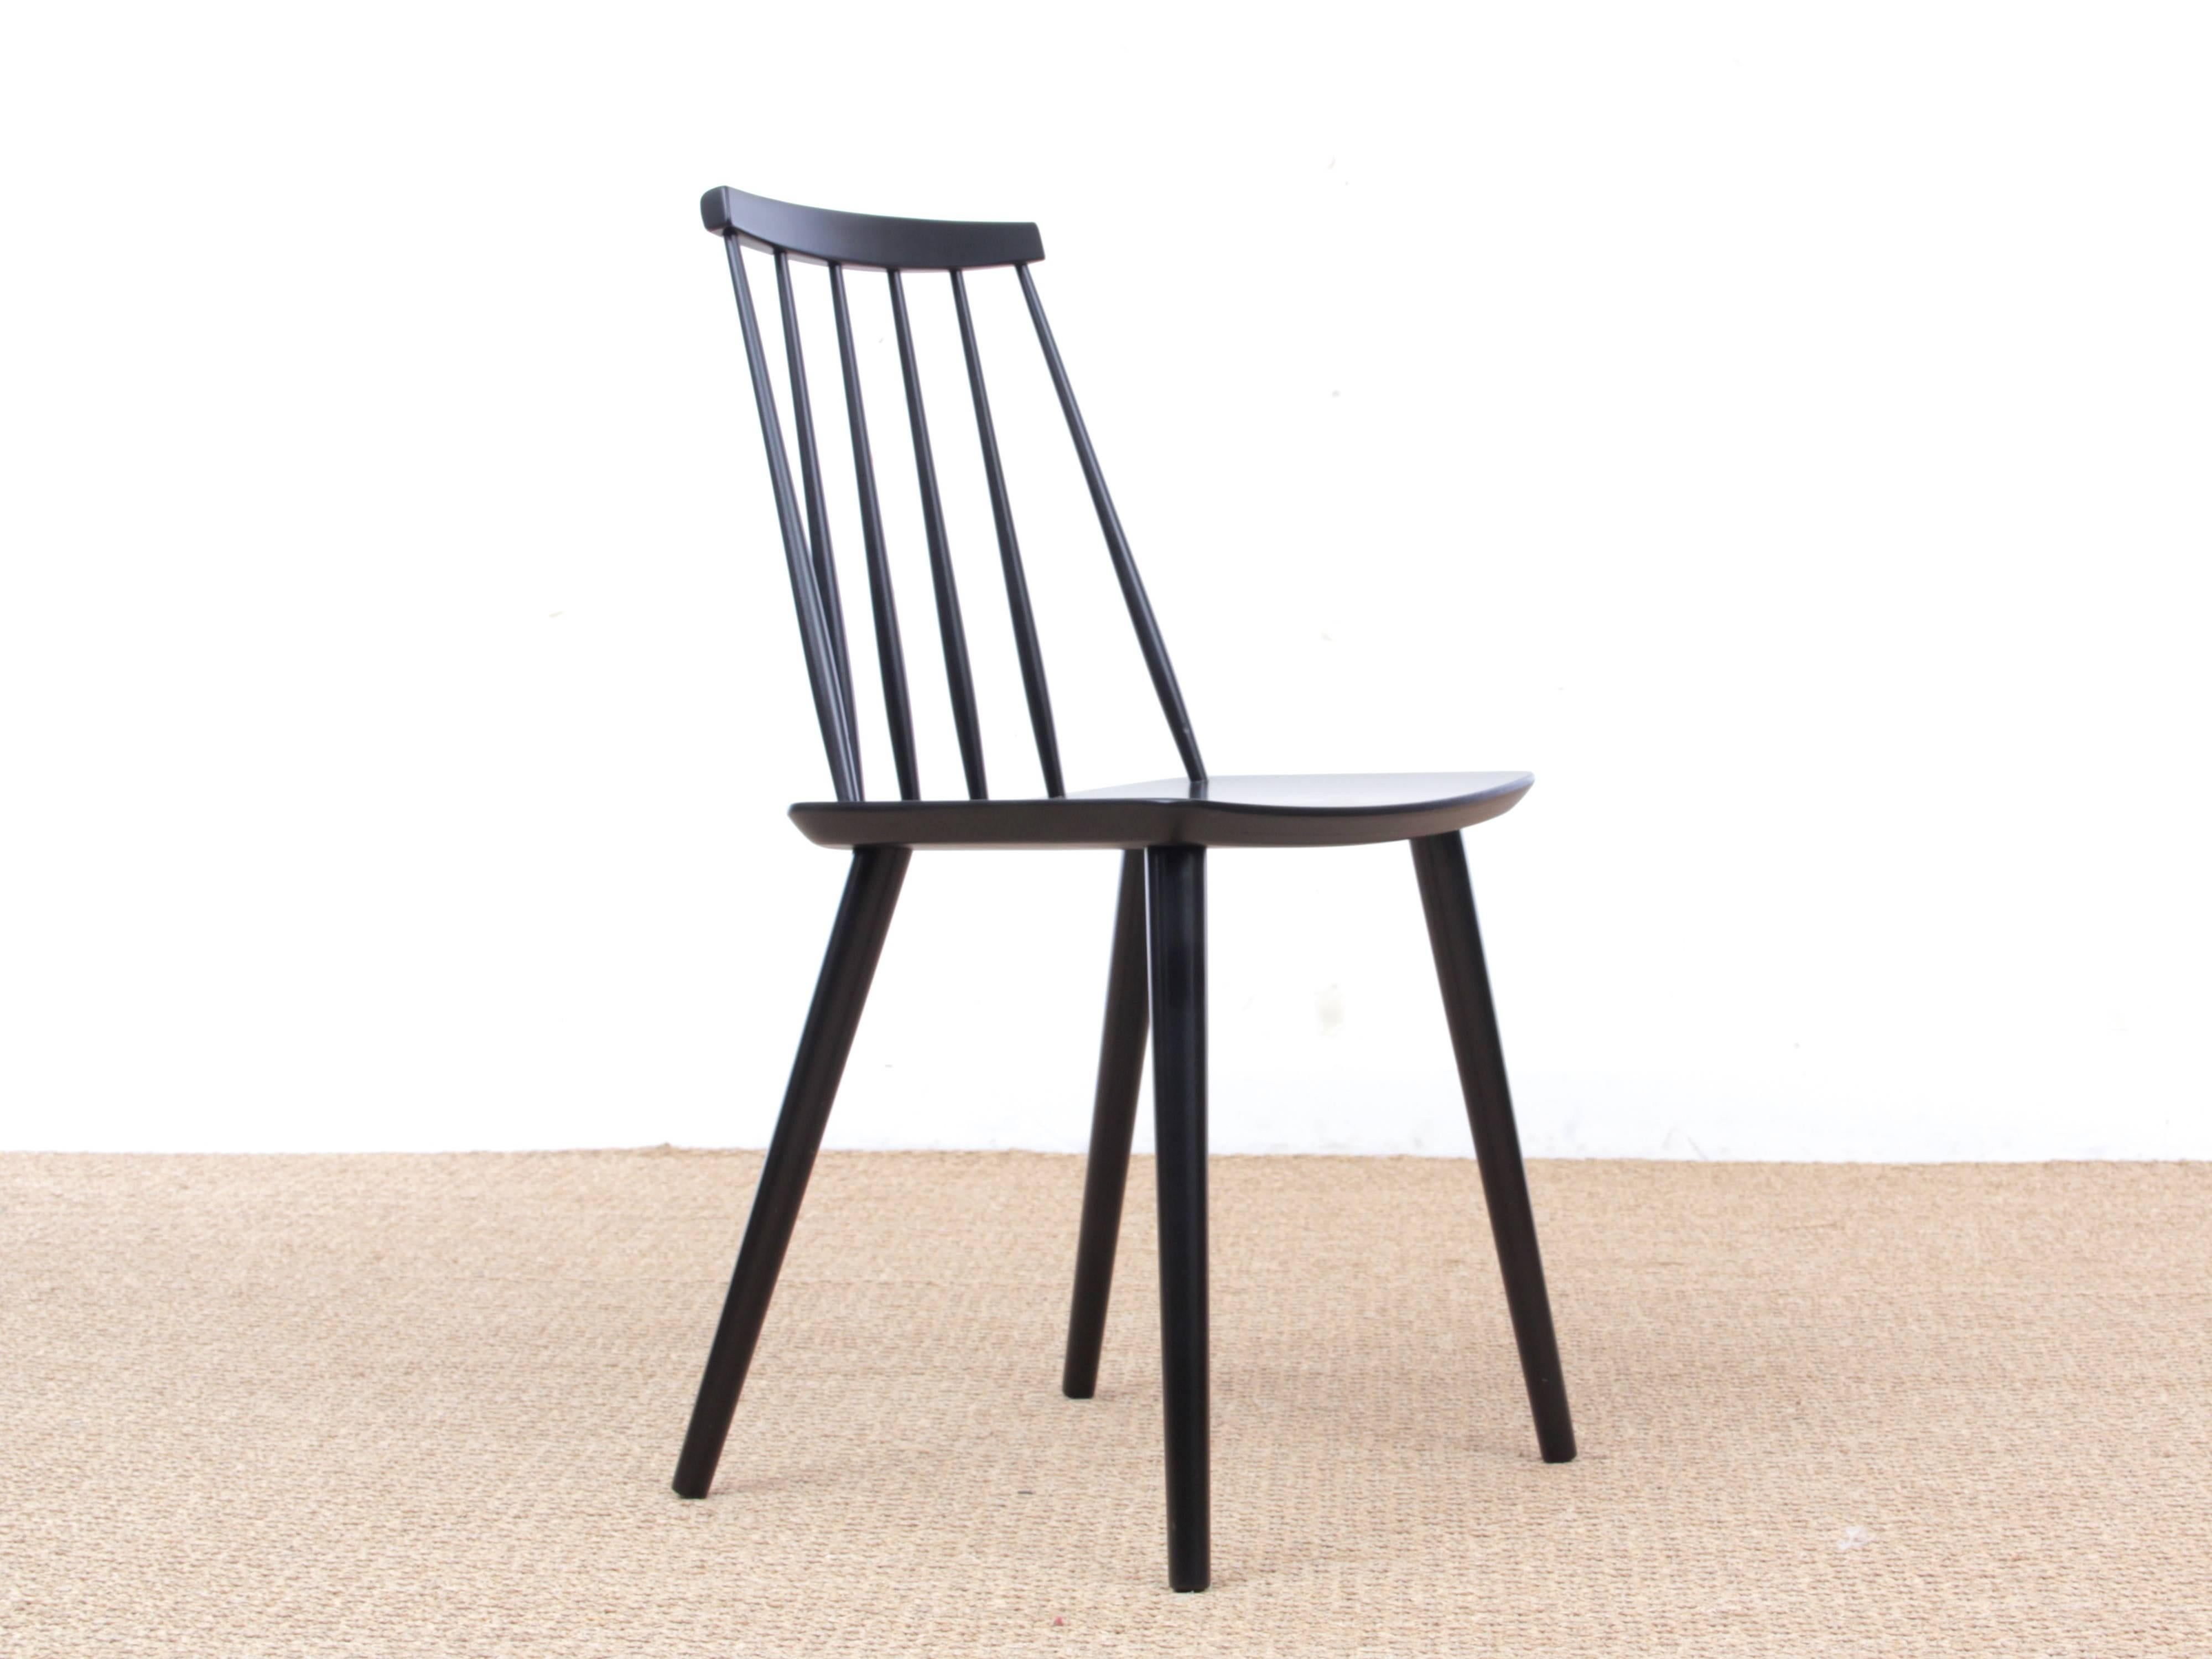 The Modern Scandinavian Stick Back chair by Thomas Harlev, hêtre teinté noir. Nouvelle édition.
L'architecte Thomas Harlev appartenait à un groupe de créateurs de meubles danois qui, au début des années 1950, ont conçu des meubles de qualité